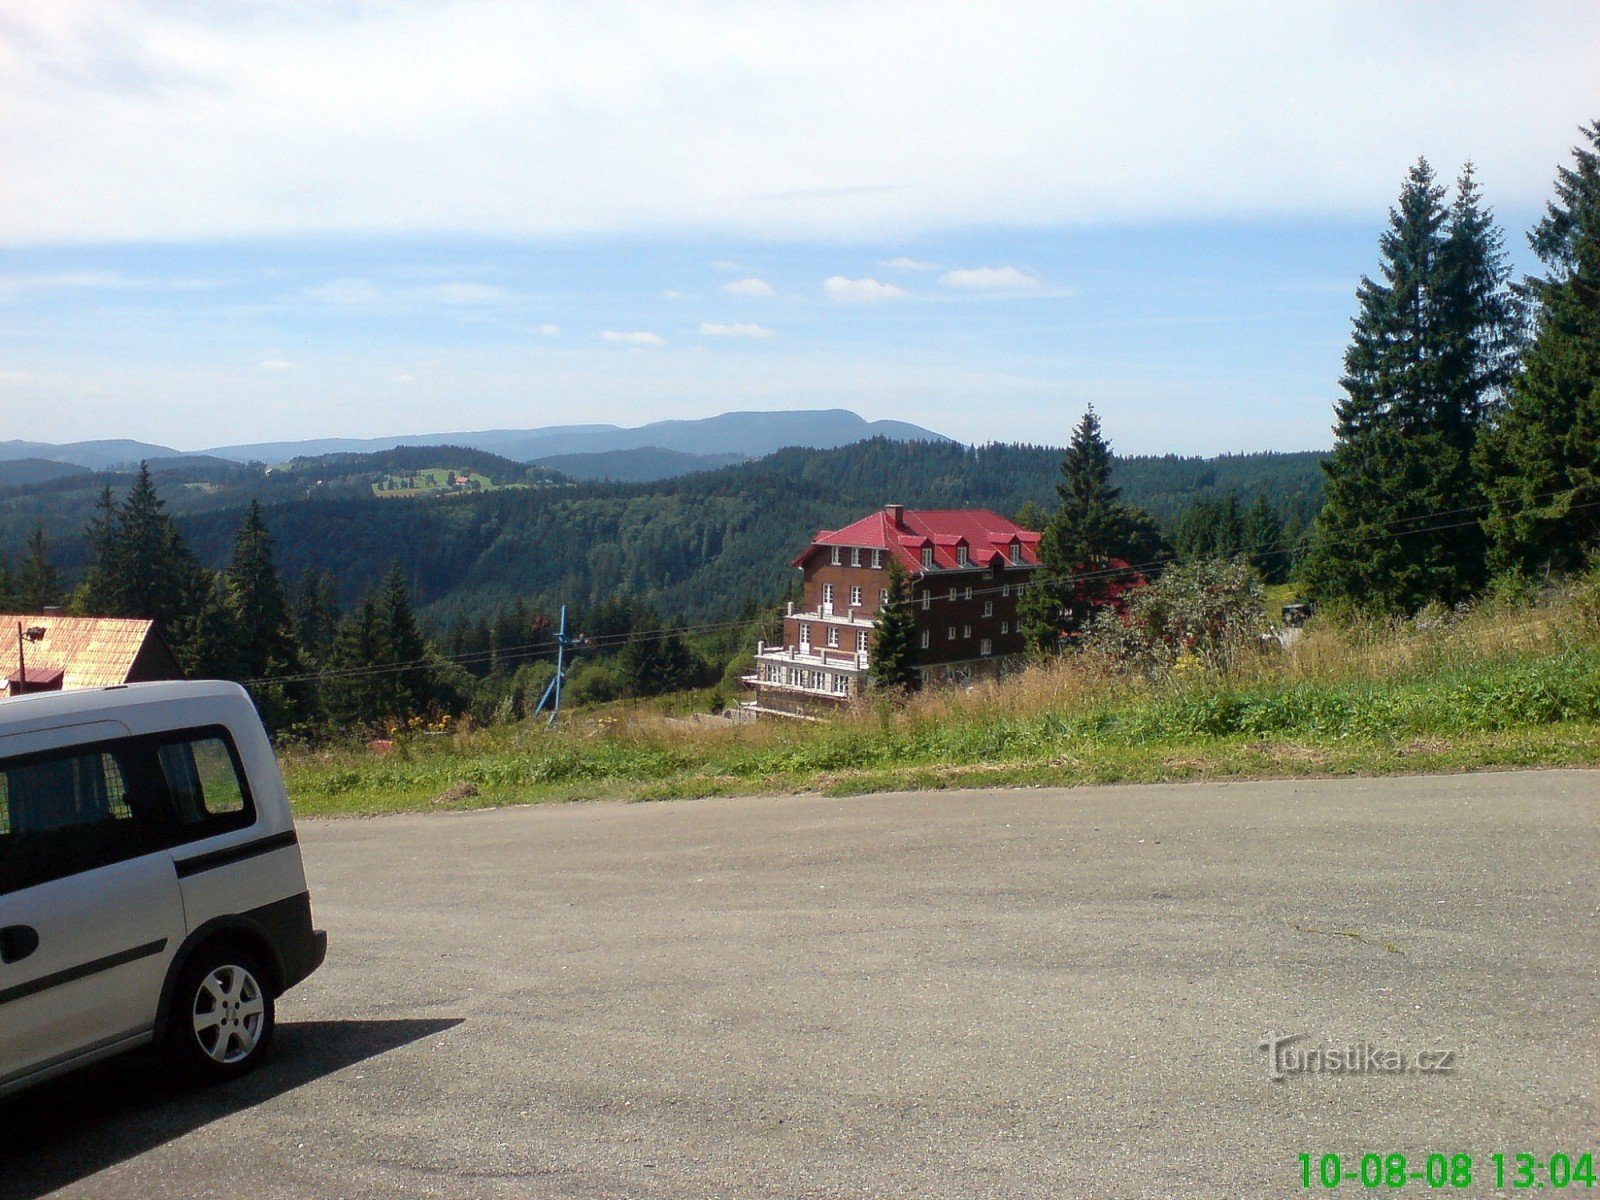 Vista de Sulov do lado eslovaco